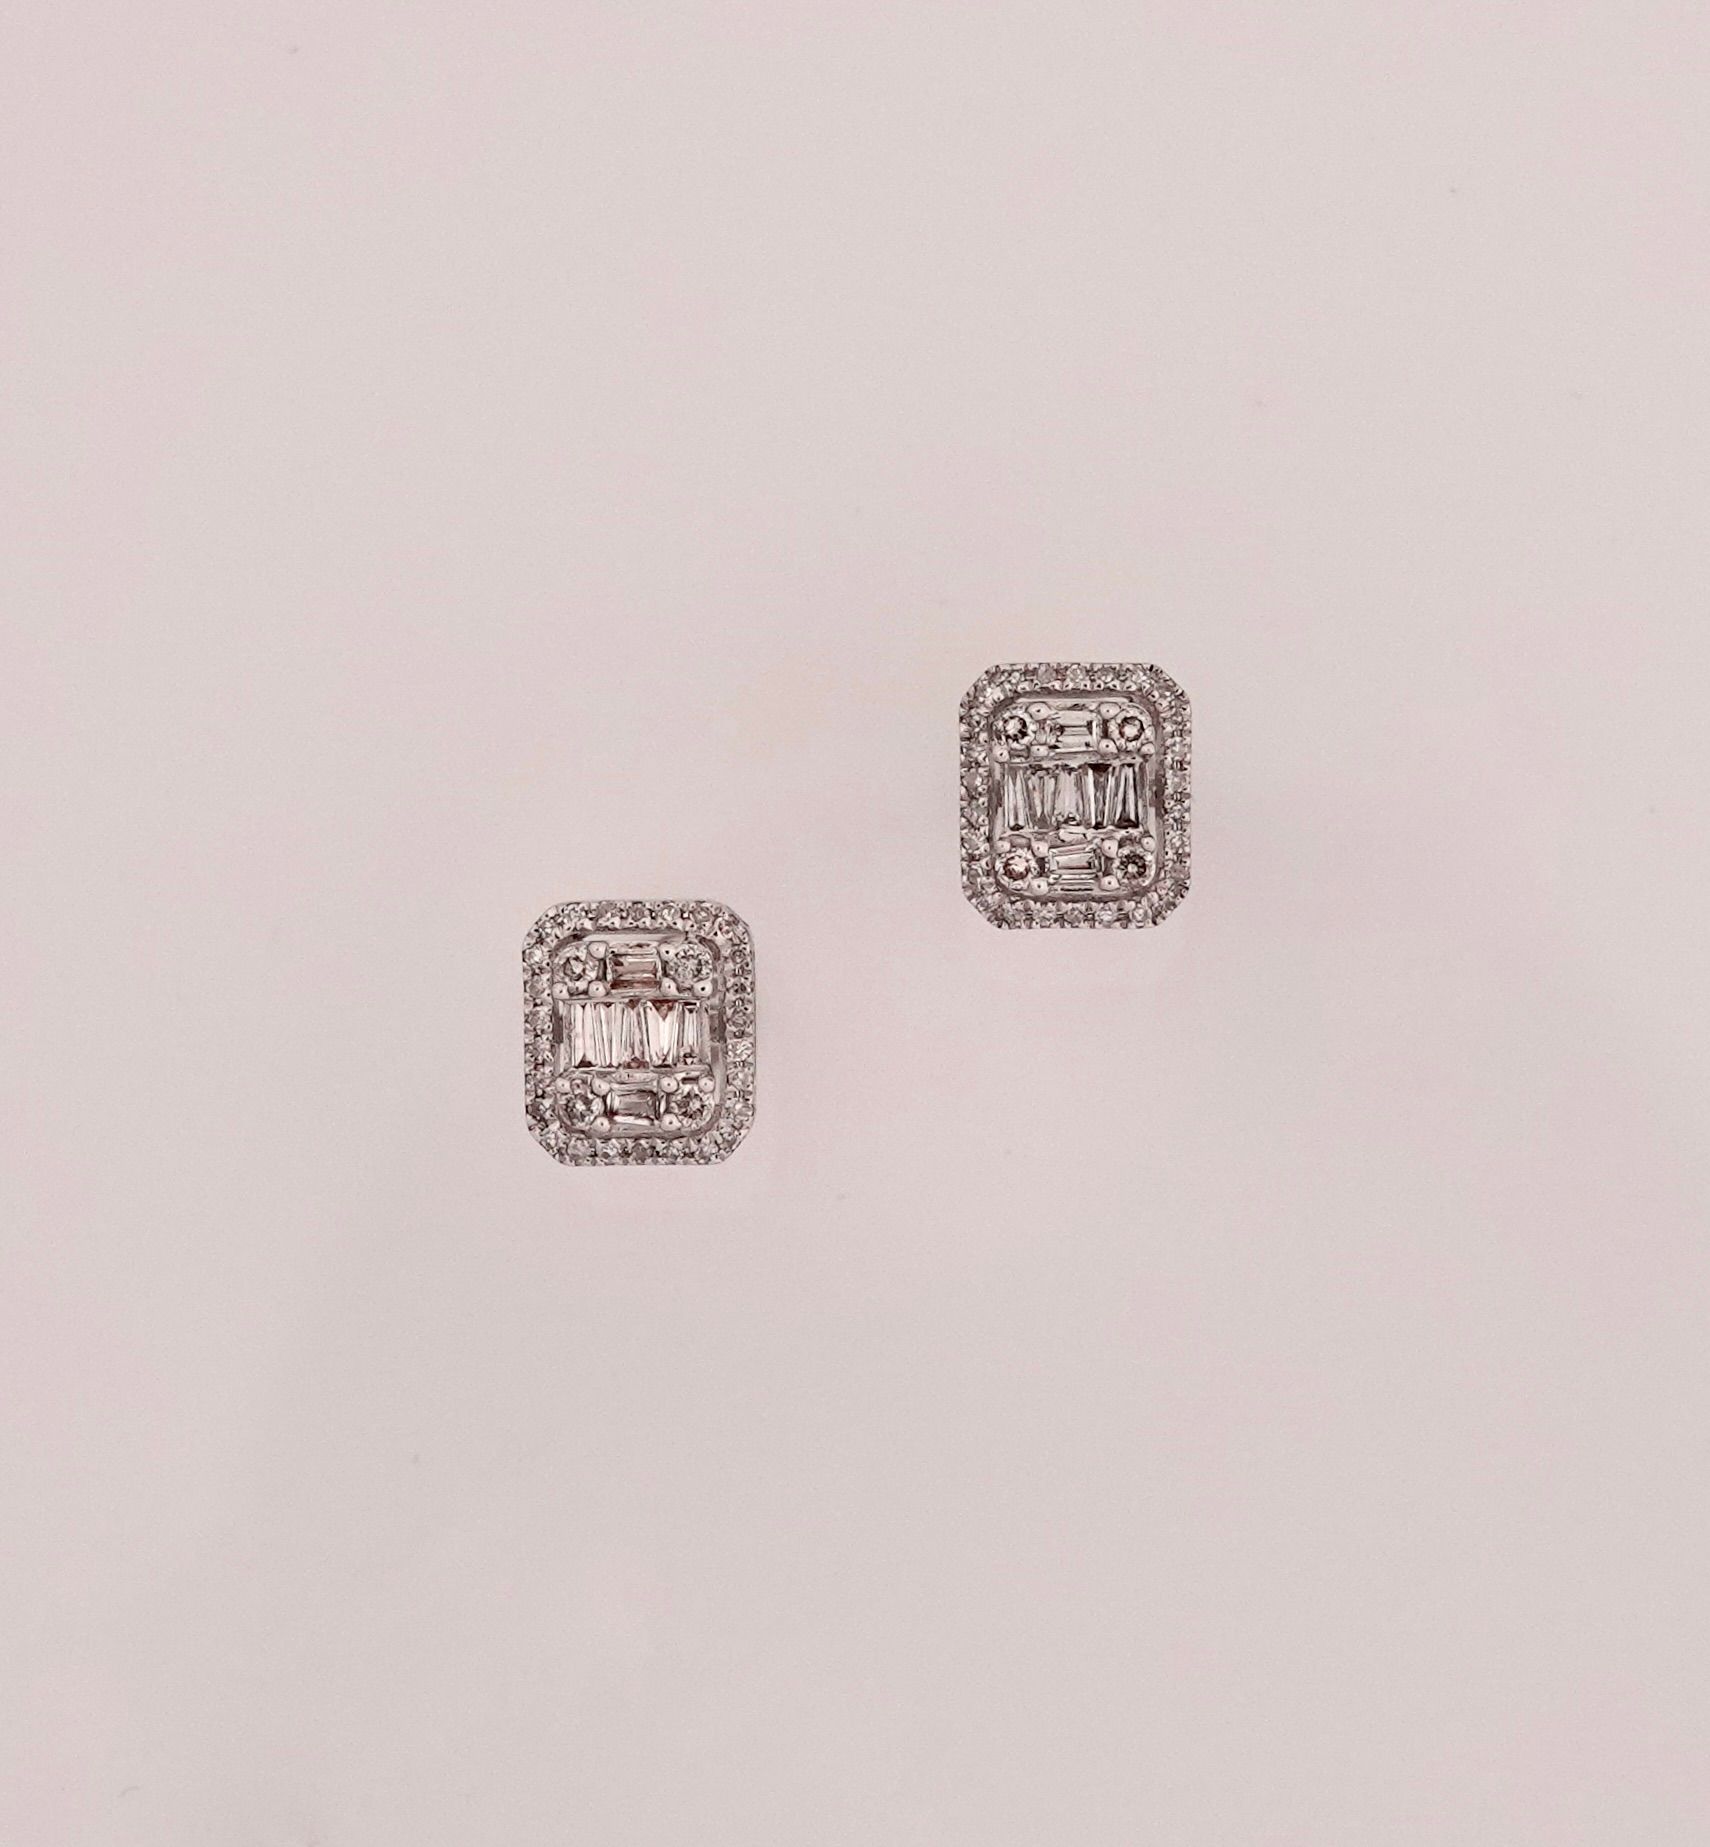 Null 750毫米白金长方形耳环，镶嵌长方形钻石和圆钻共0.40克拉，尺寸8 x 7毫米，重量：1.85克，毛重。